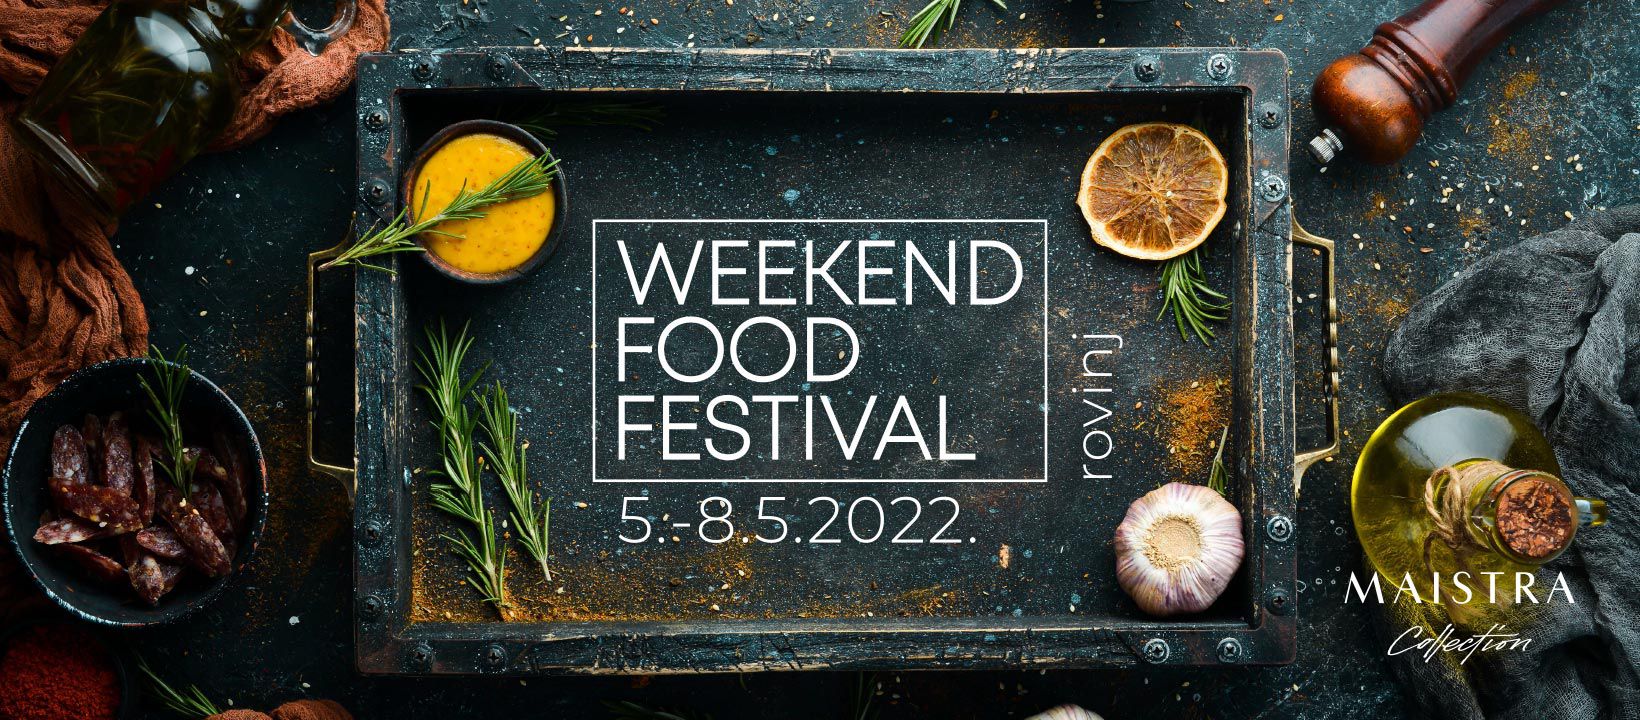 Gala večere, masterclassovi, brojni chefovi, panelisti i izlagači te najbolja zabava – sve nas to čeka za desetak dana na Weekend Food Festivalu